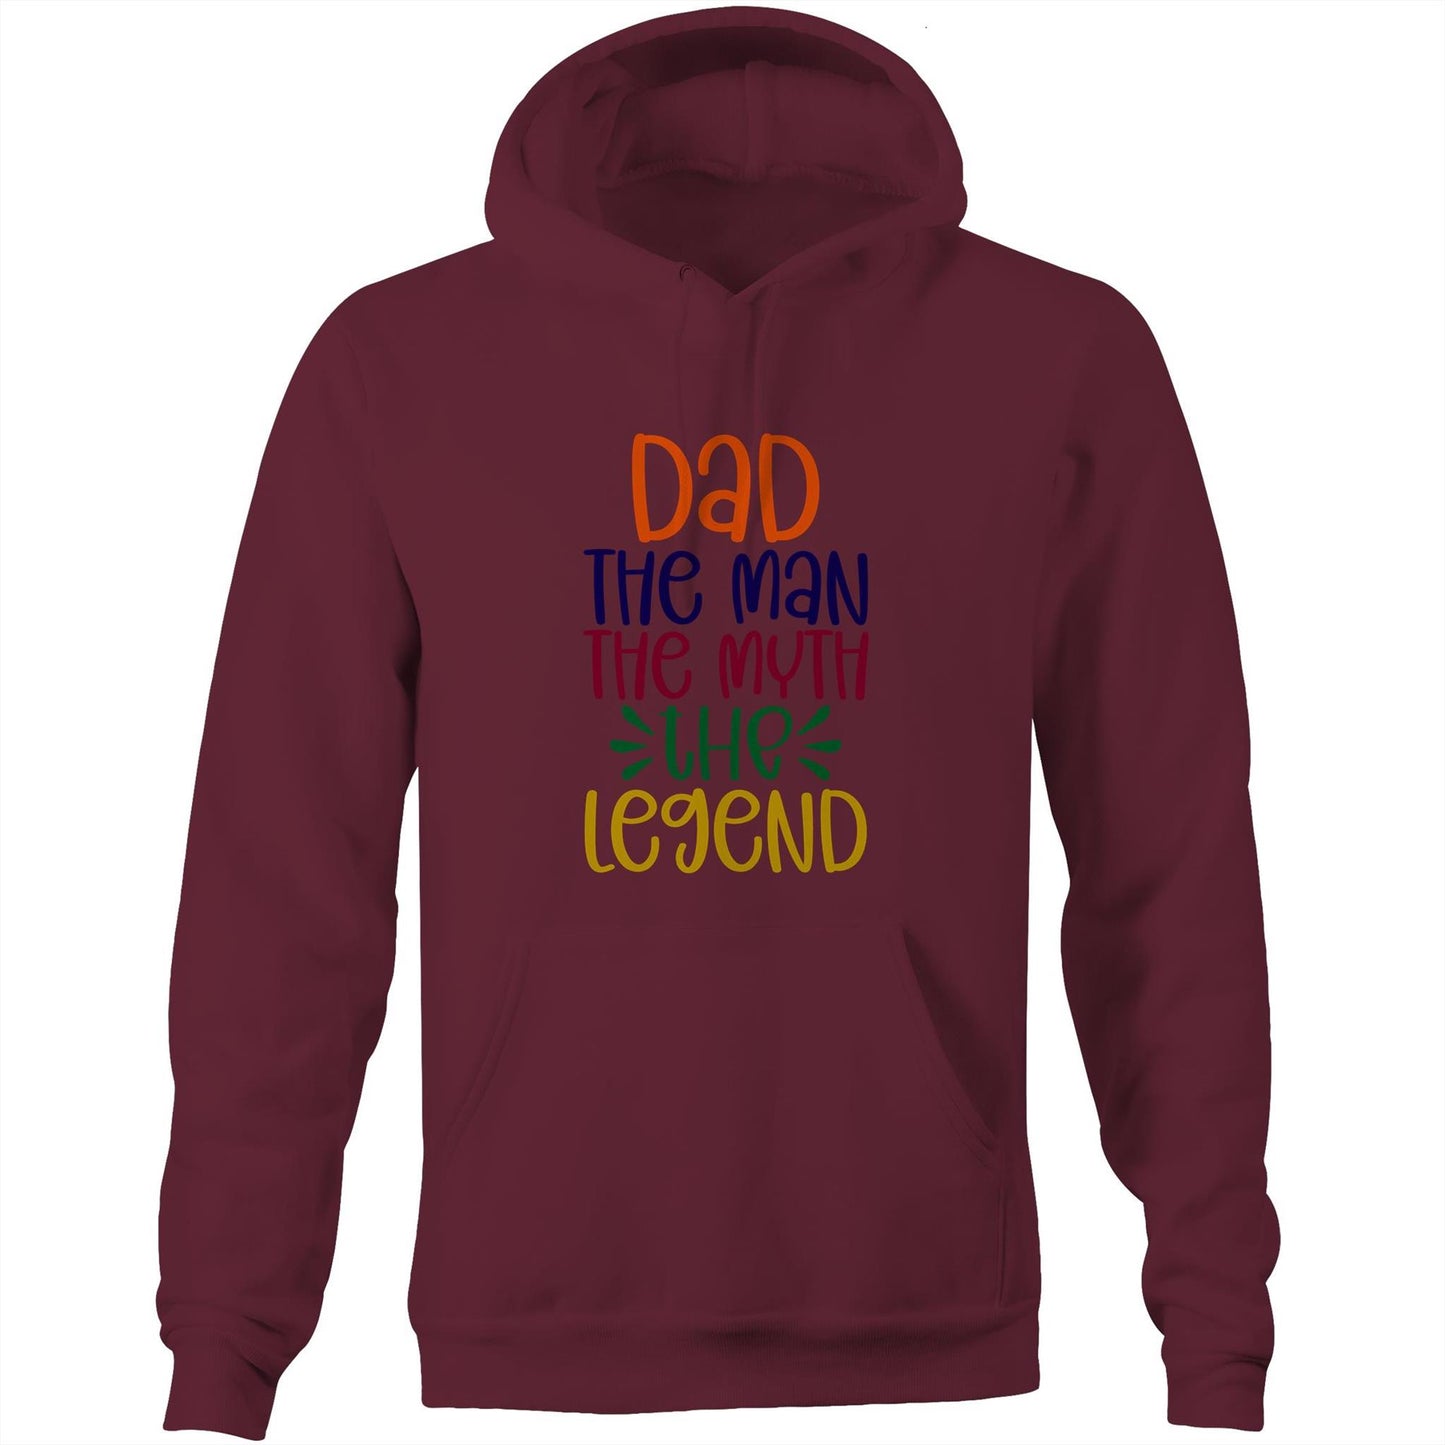 Dad, The Man, The Myth, The Legend - Pocket Hoodie Sweatshirt Burgundy Hoodie Dad